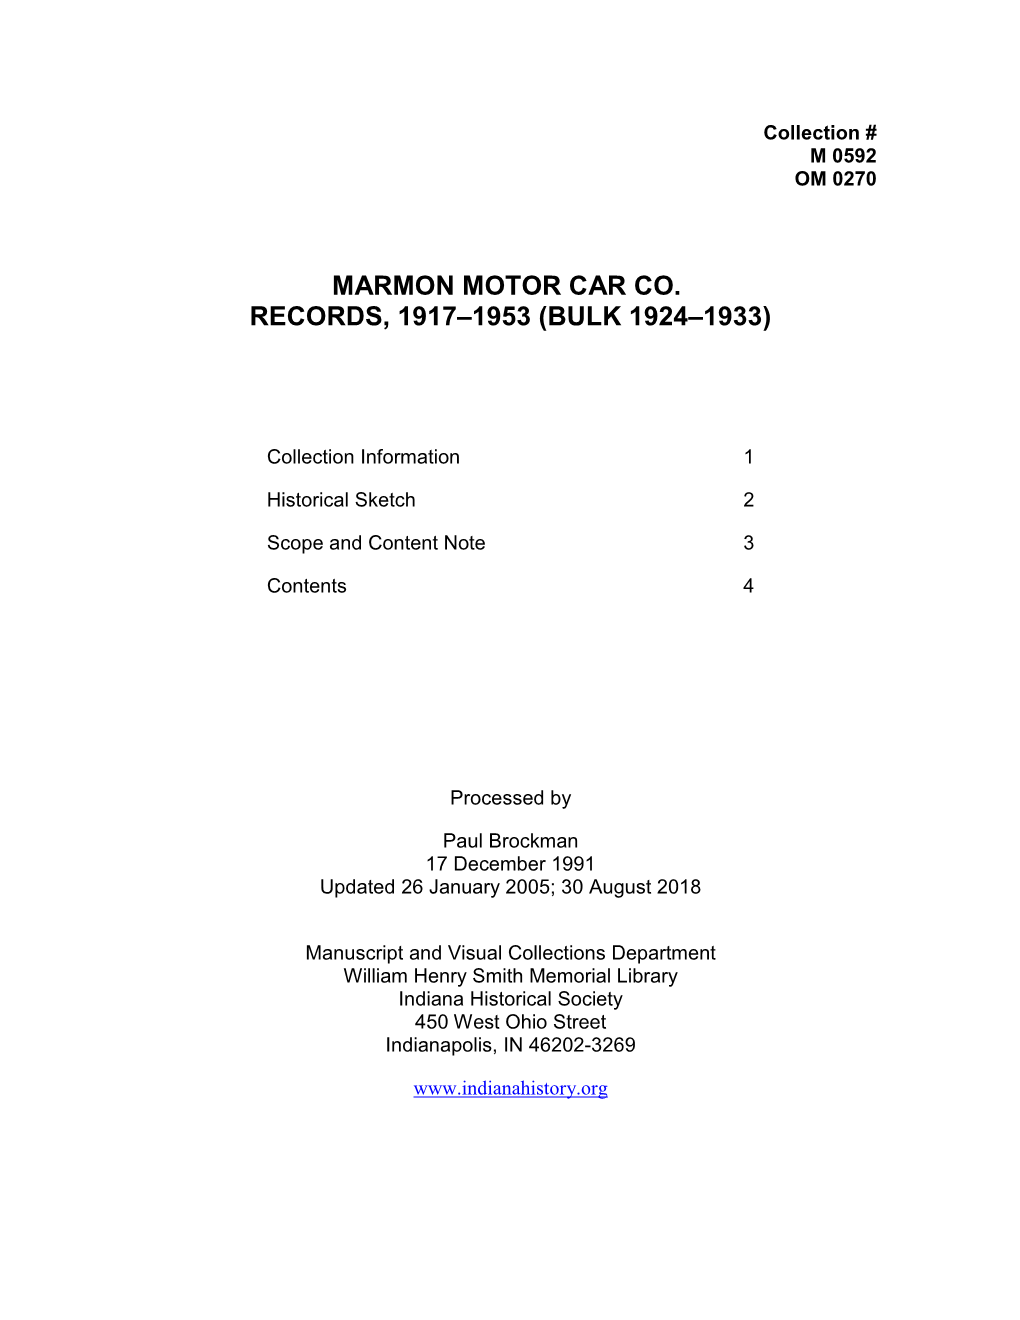 Marmon-Motor-Car-Co-Records